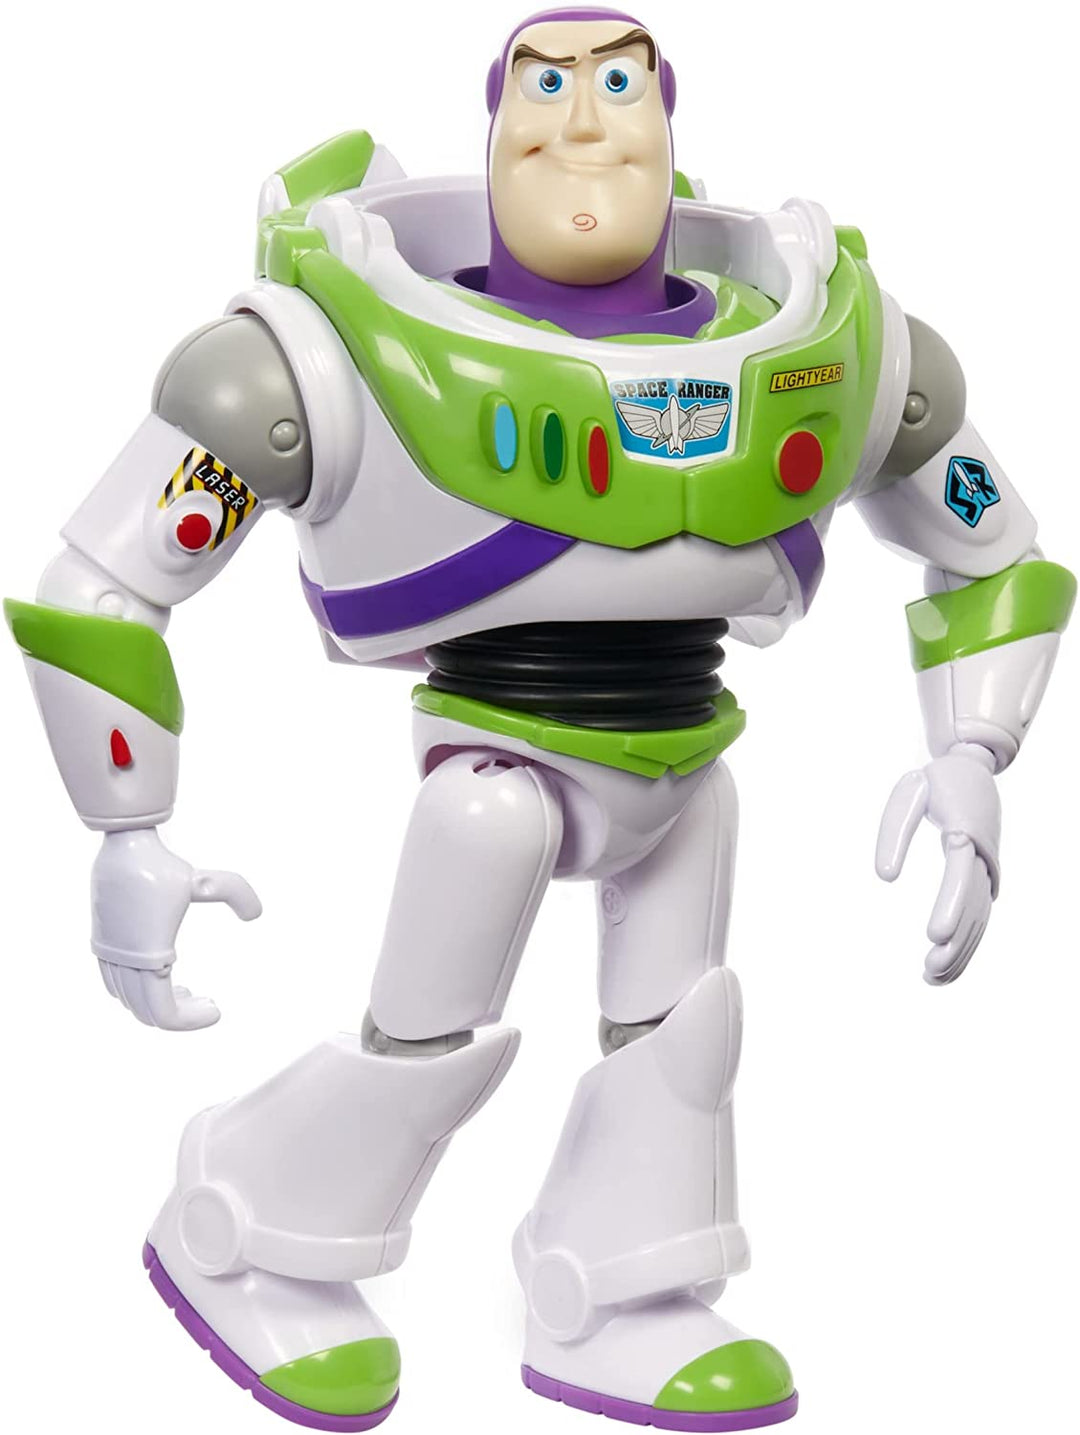 ?Disney Pixar Buzz Lightyear große Actionfigur im Maßstab 12, sehr beweglich, Auth